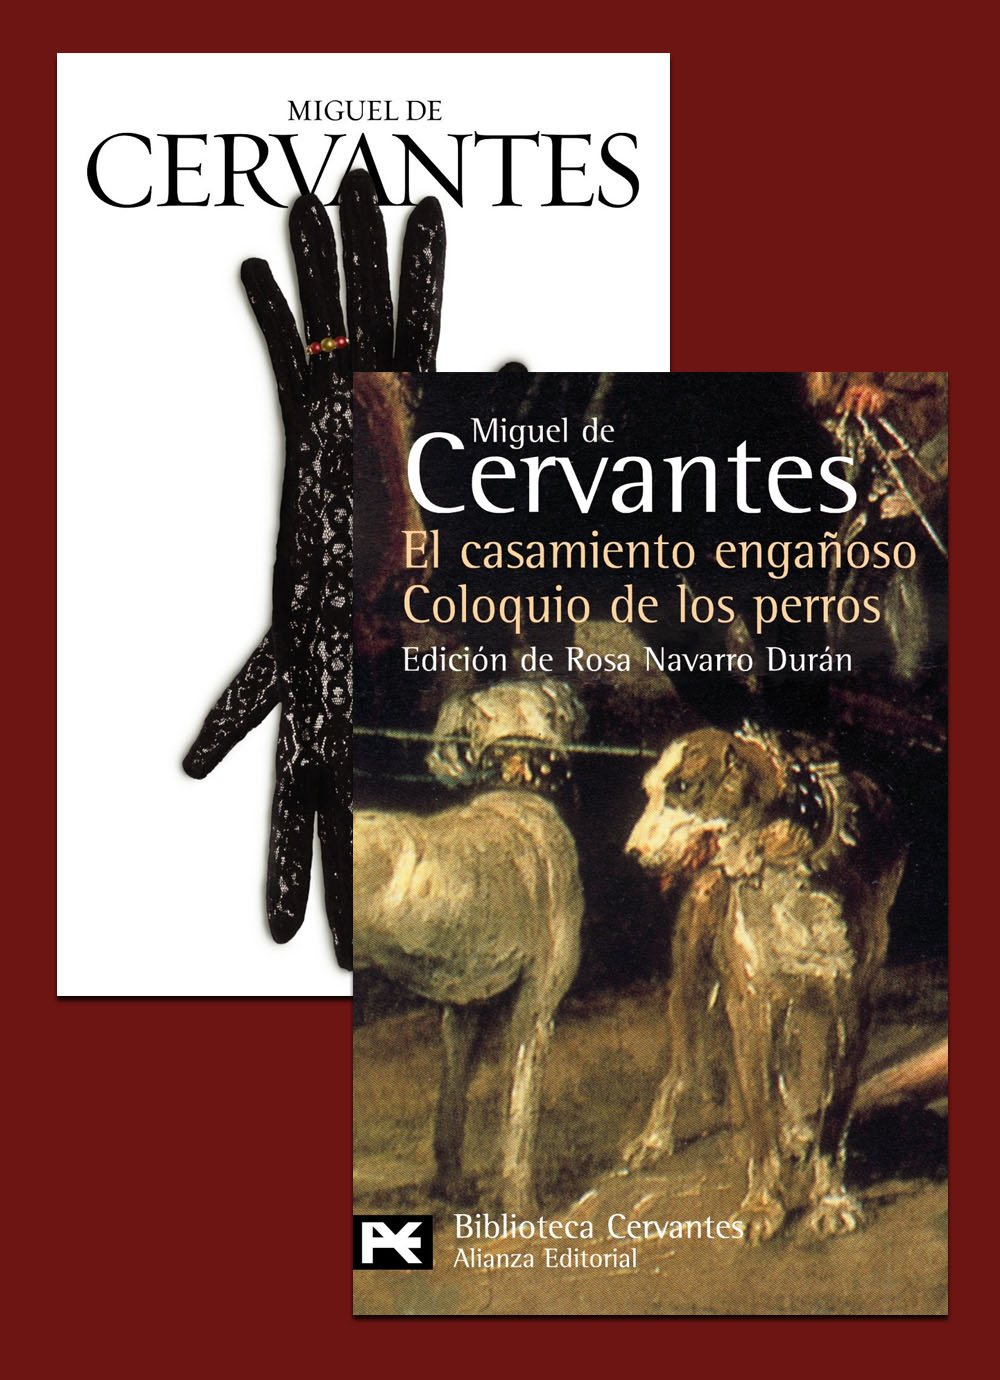 Подарочный набор «Классика: Miguel de Cervantes»